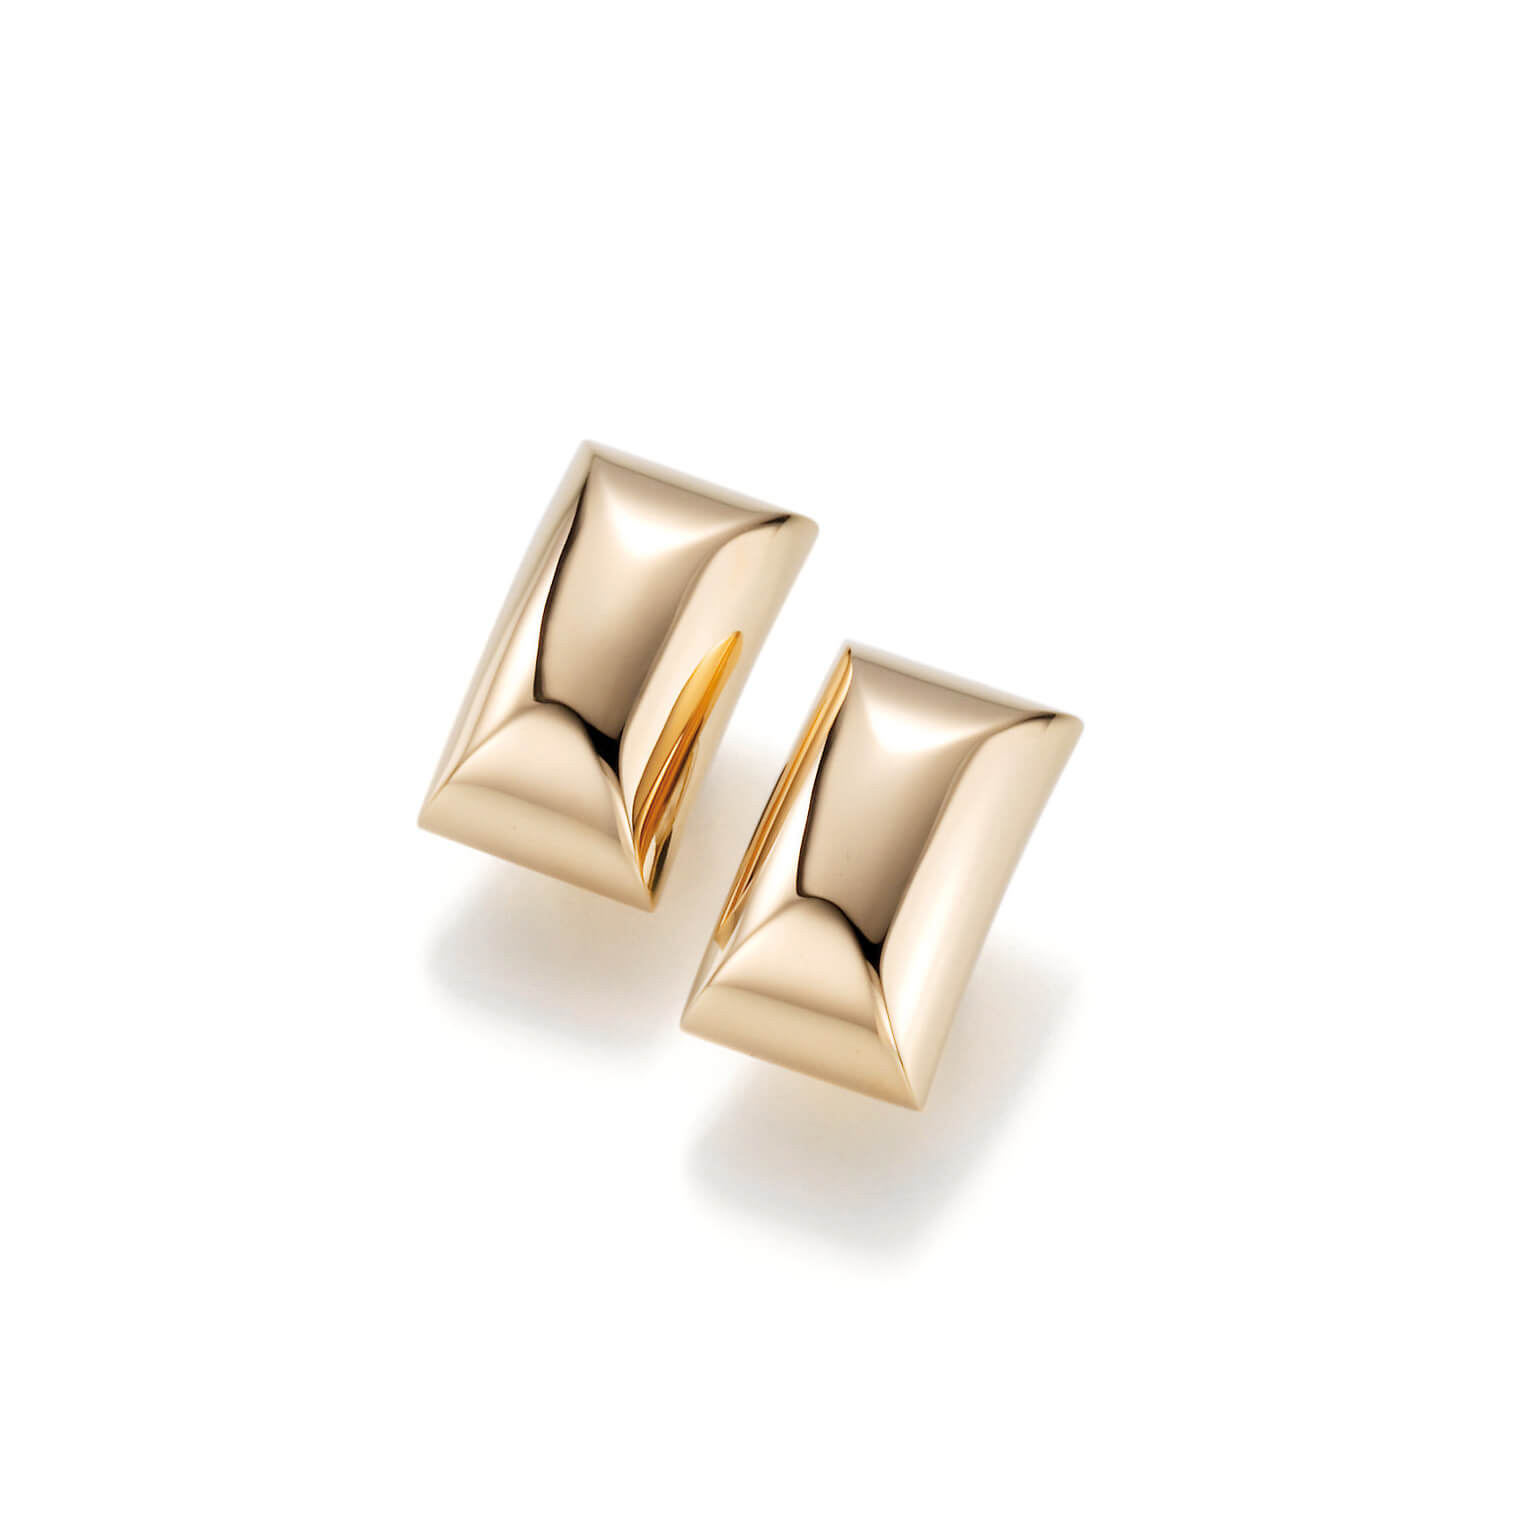 Großhandel Sie sind an der richtigen Stelle für 925 Silber OEM/ODM Schmuck individuelle vergoldete Ohrringe